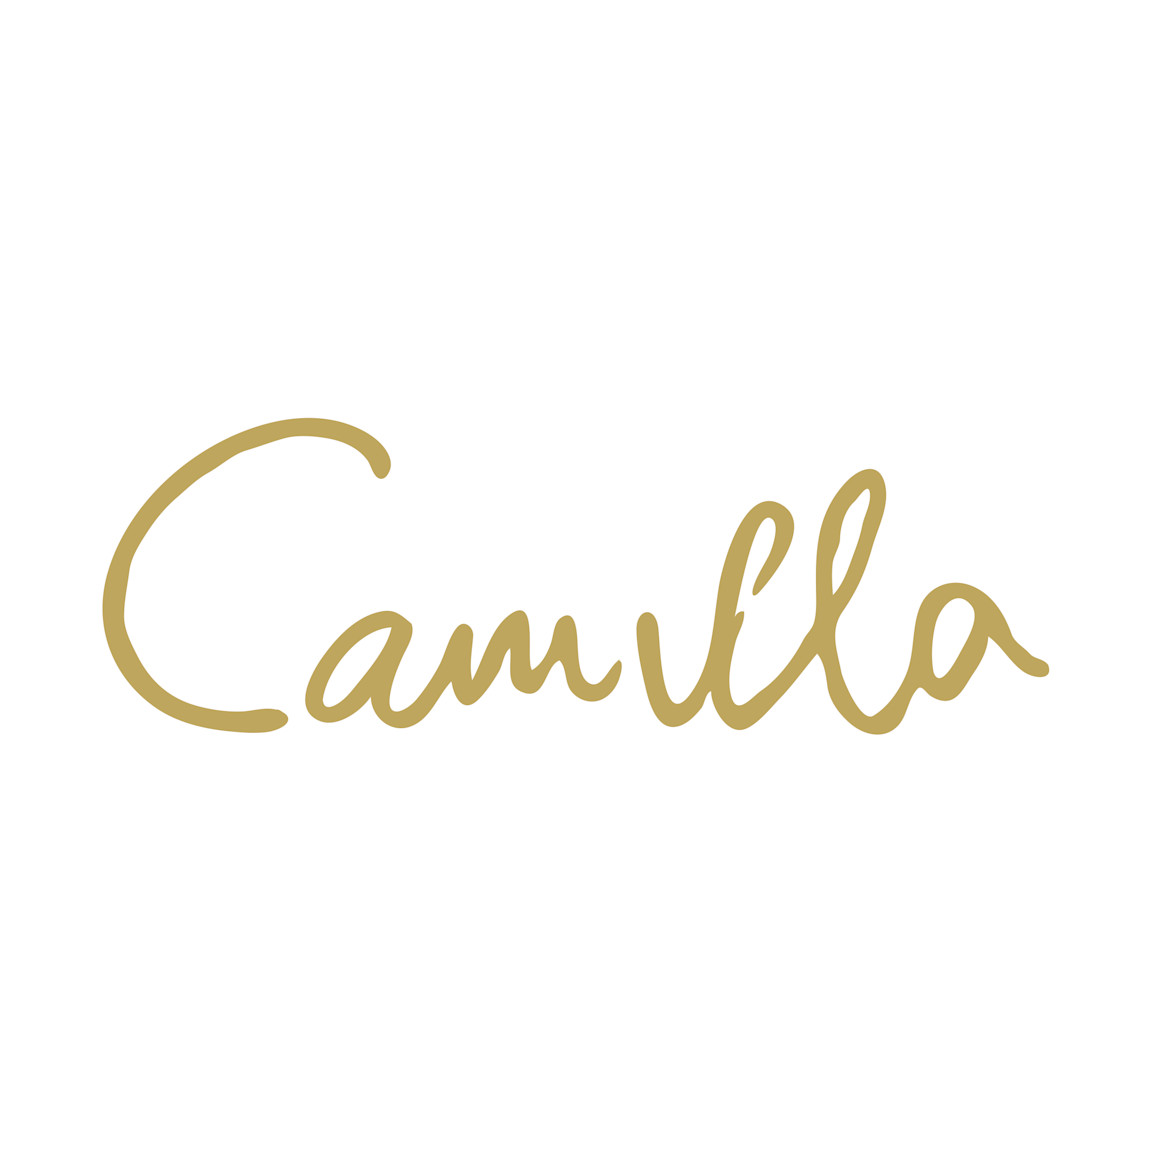 Promo codes Camilla